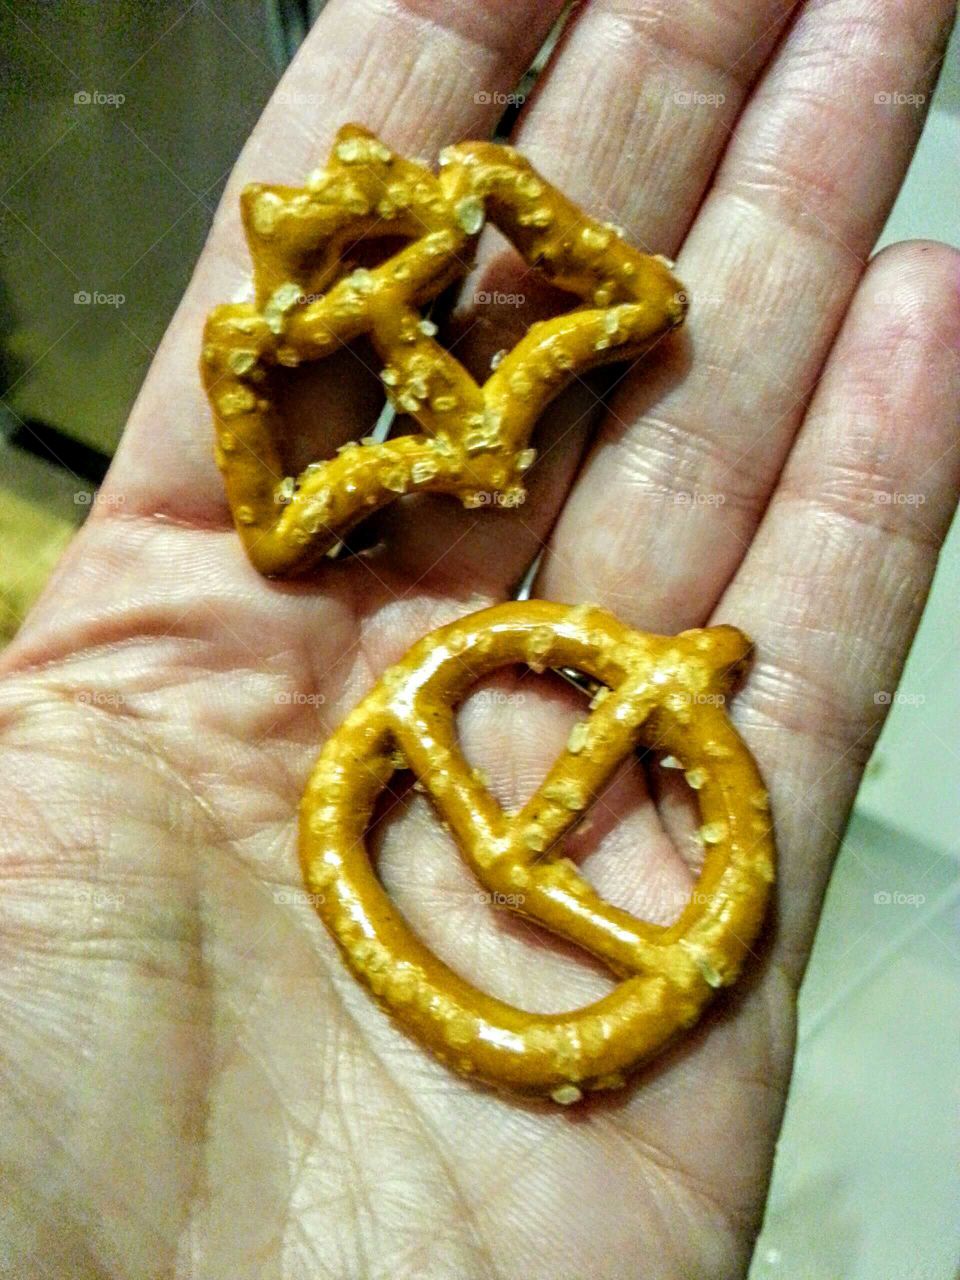 Close-up of a hand holding original shapped pretzels